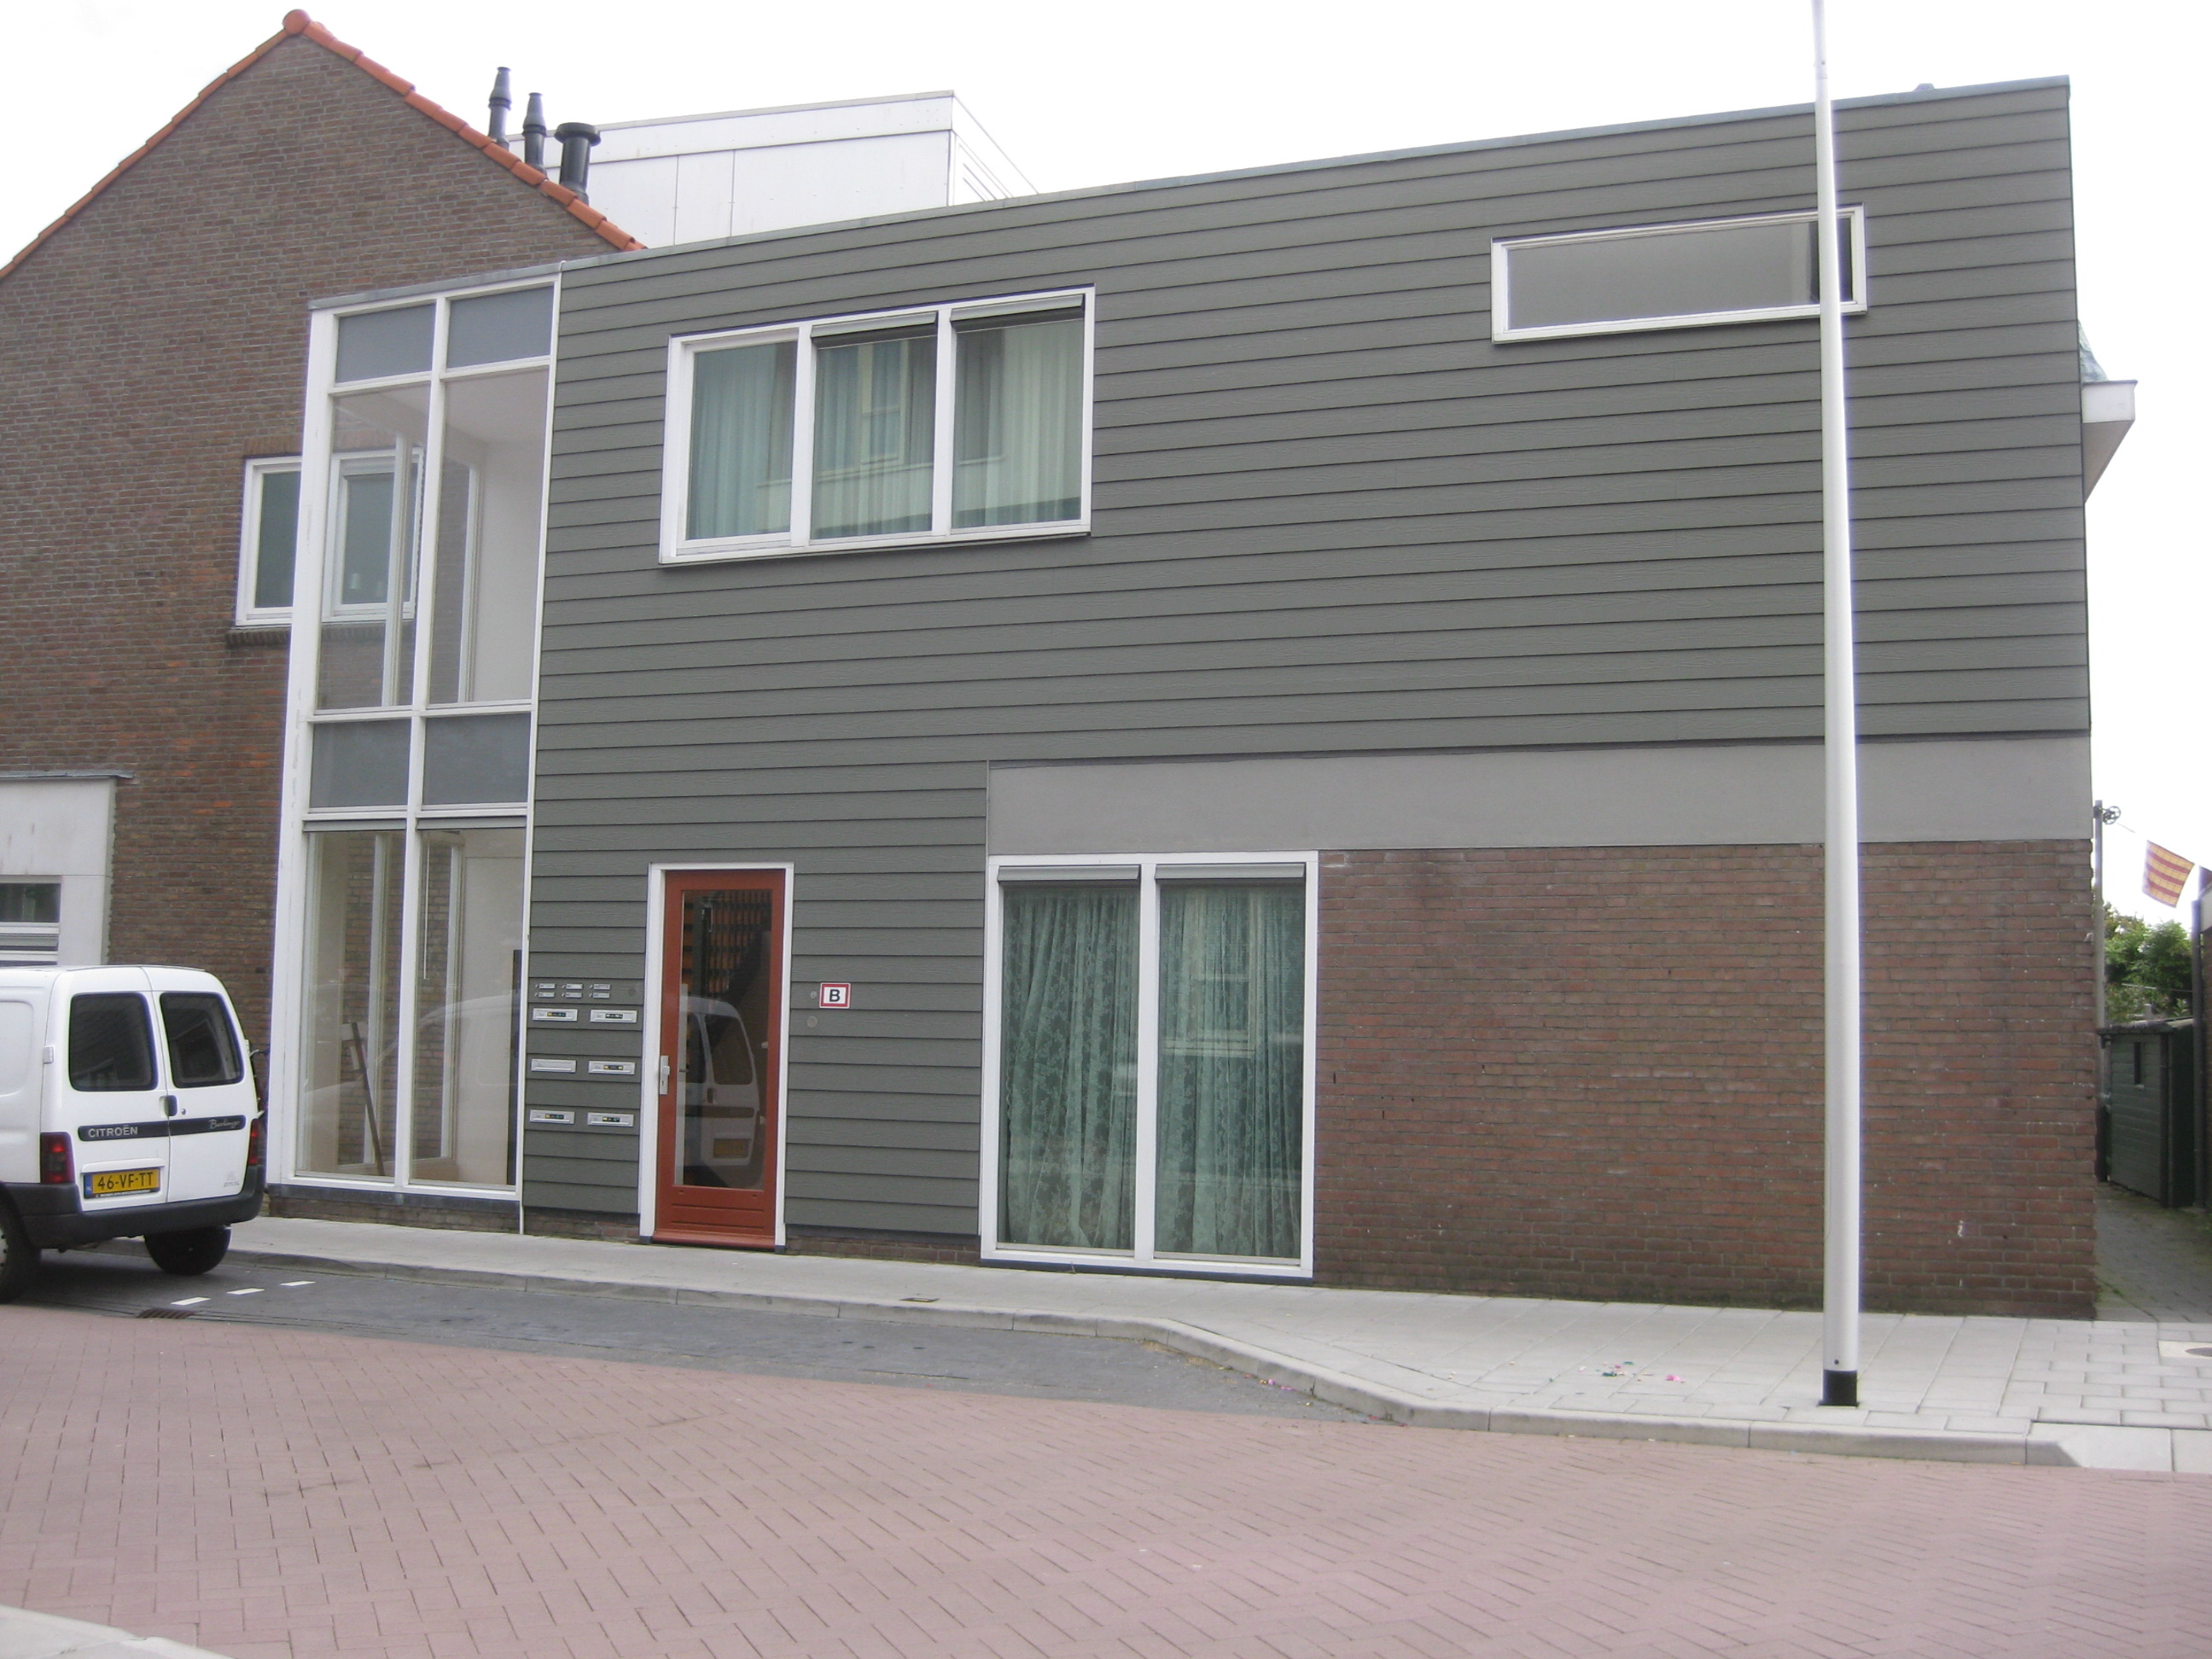 Populierenstraat 6c, 2371 SB Roelofarendsveen, Nederland